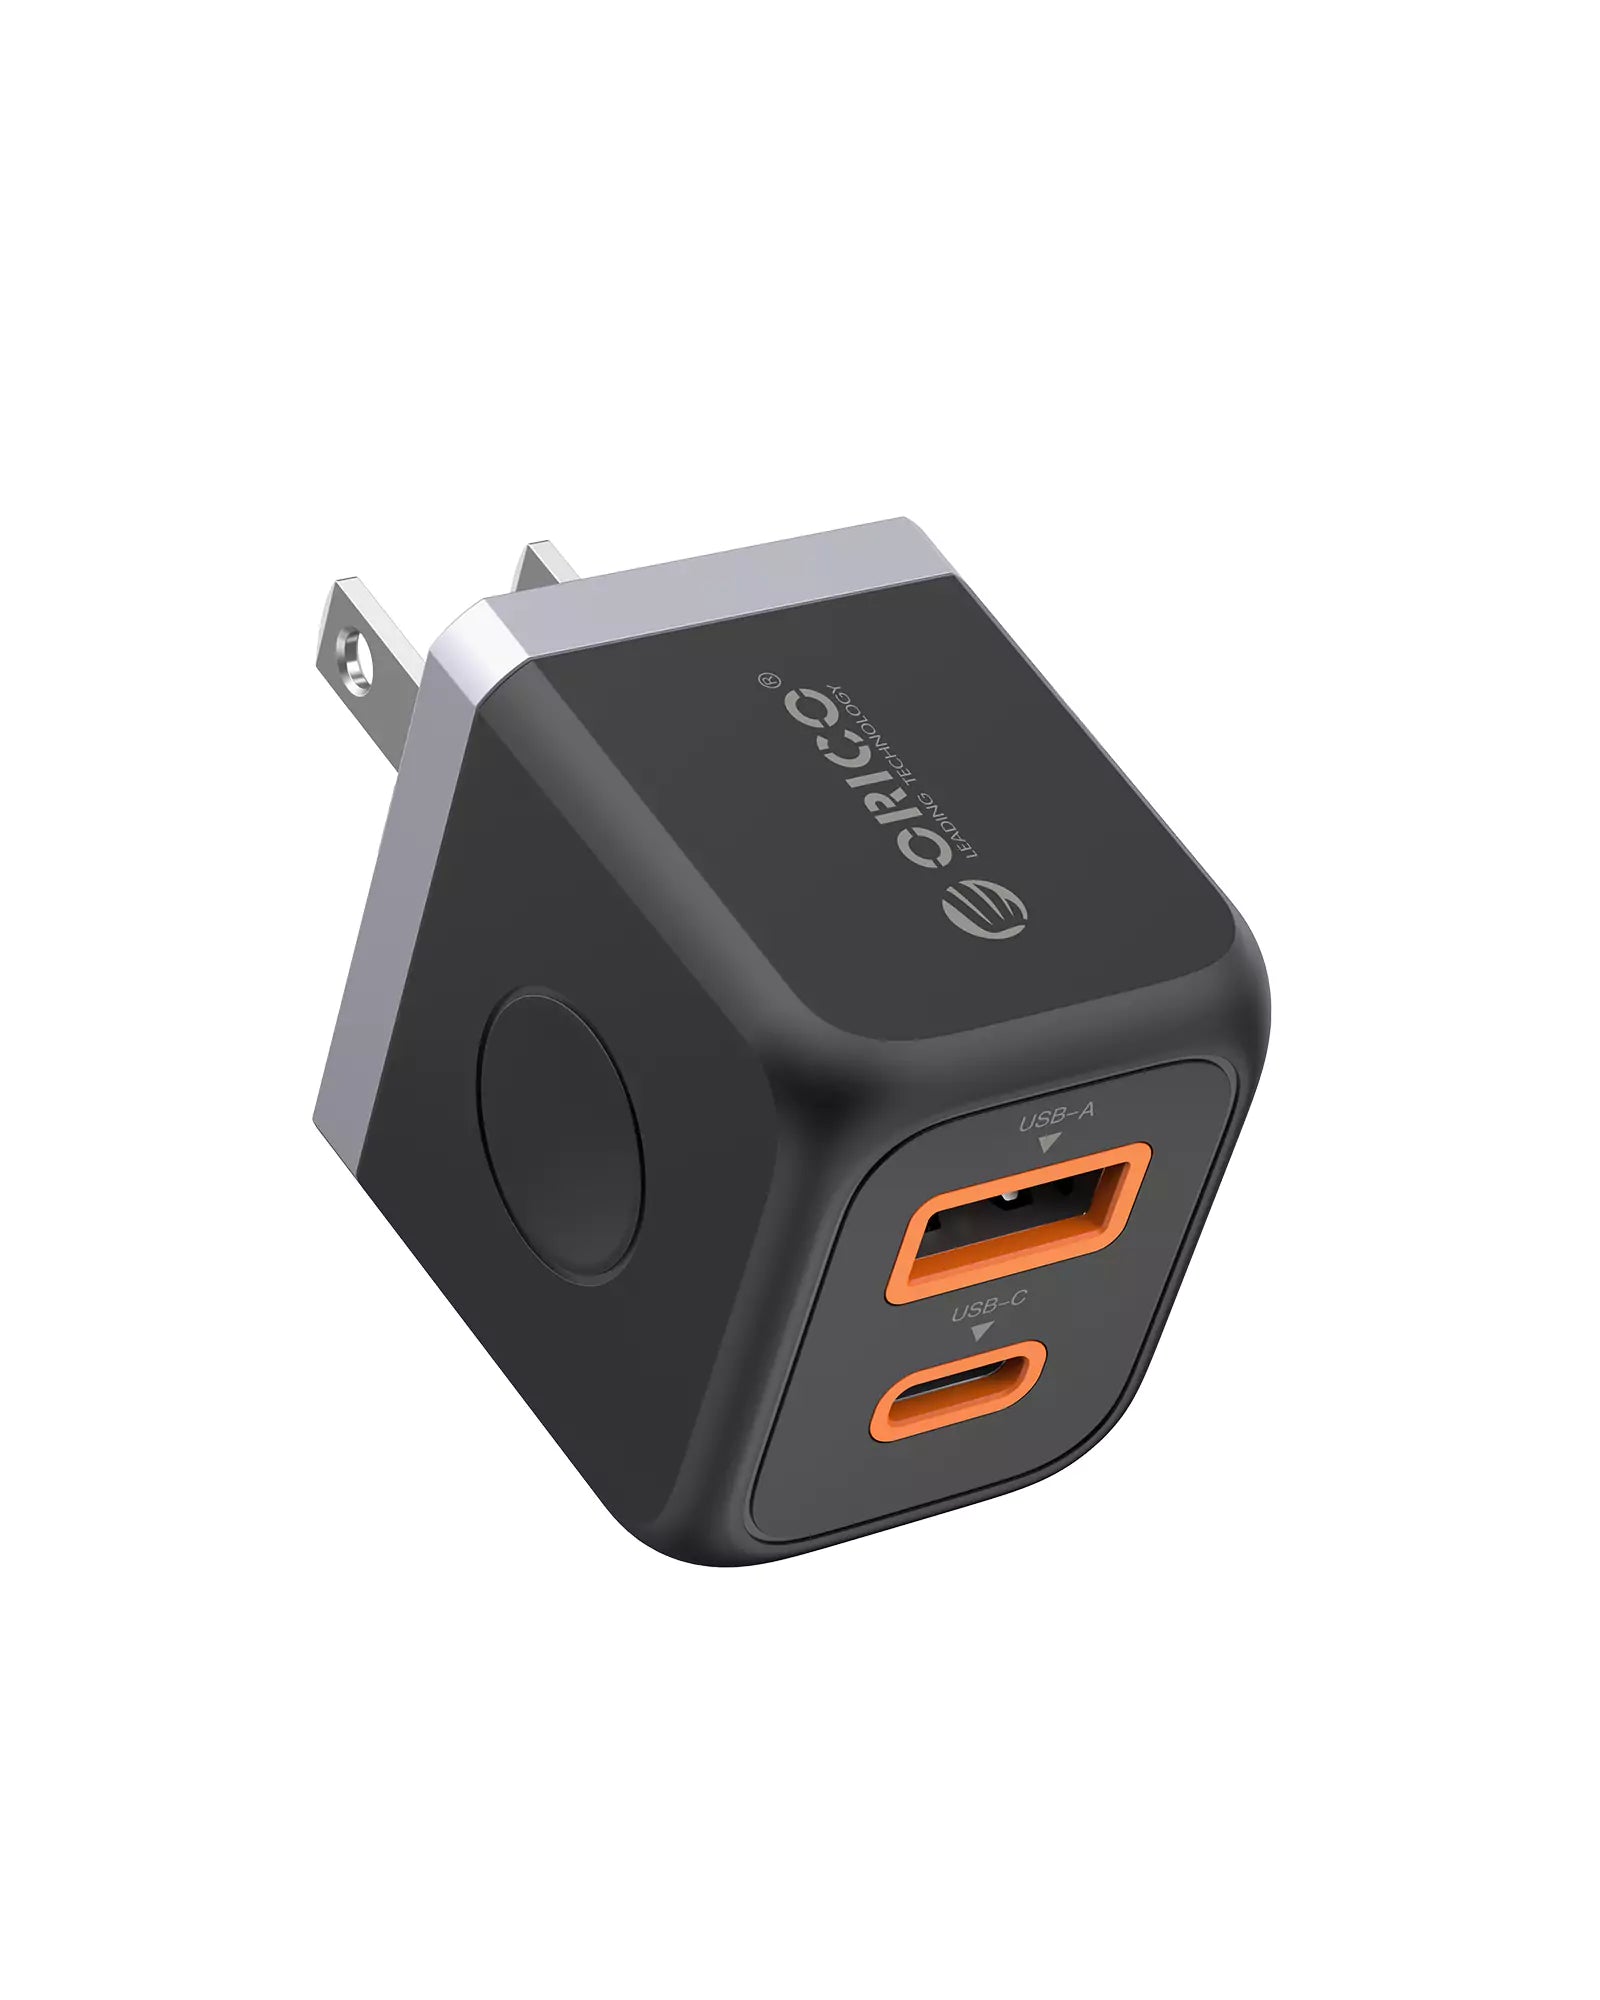 Cargador USB ORICO con juego de cables Lightning a USB C